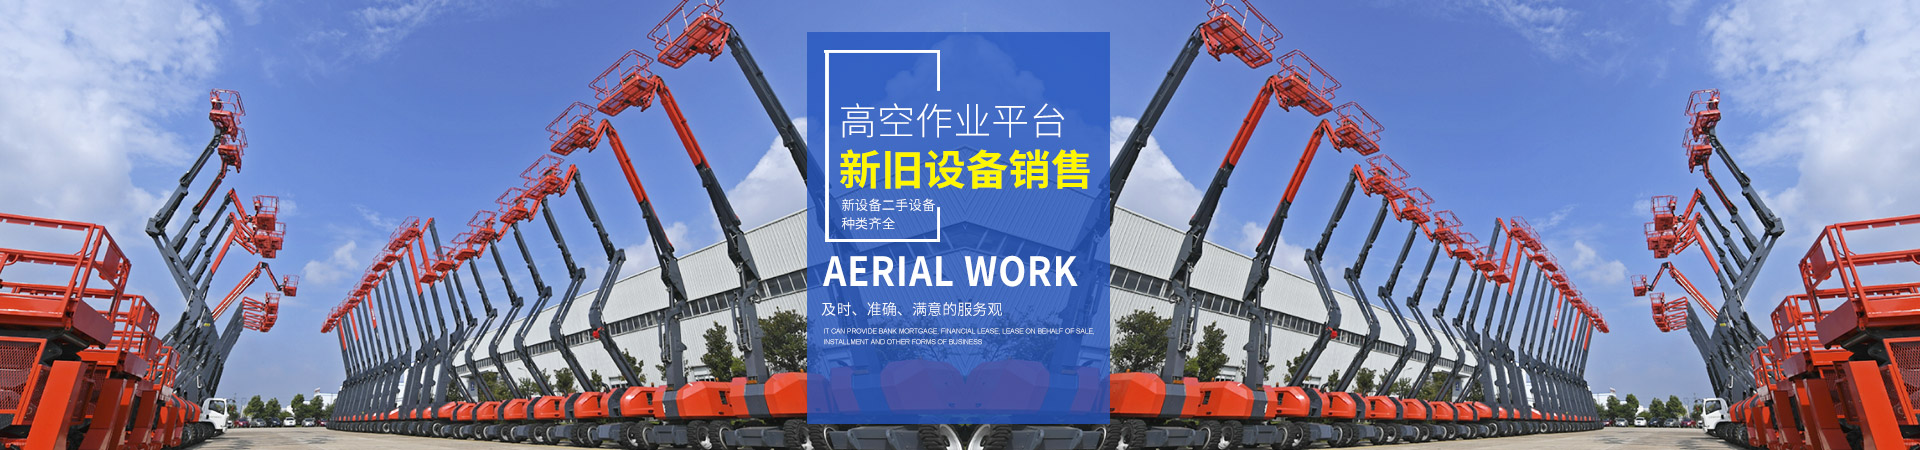 安博·体育(中国)有限公司_湖南车载式高空作业平台